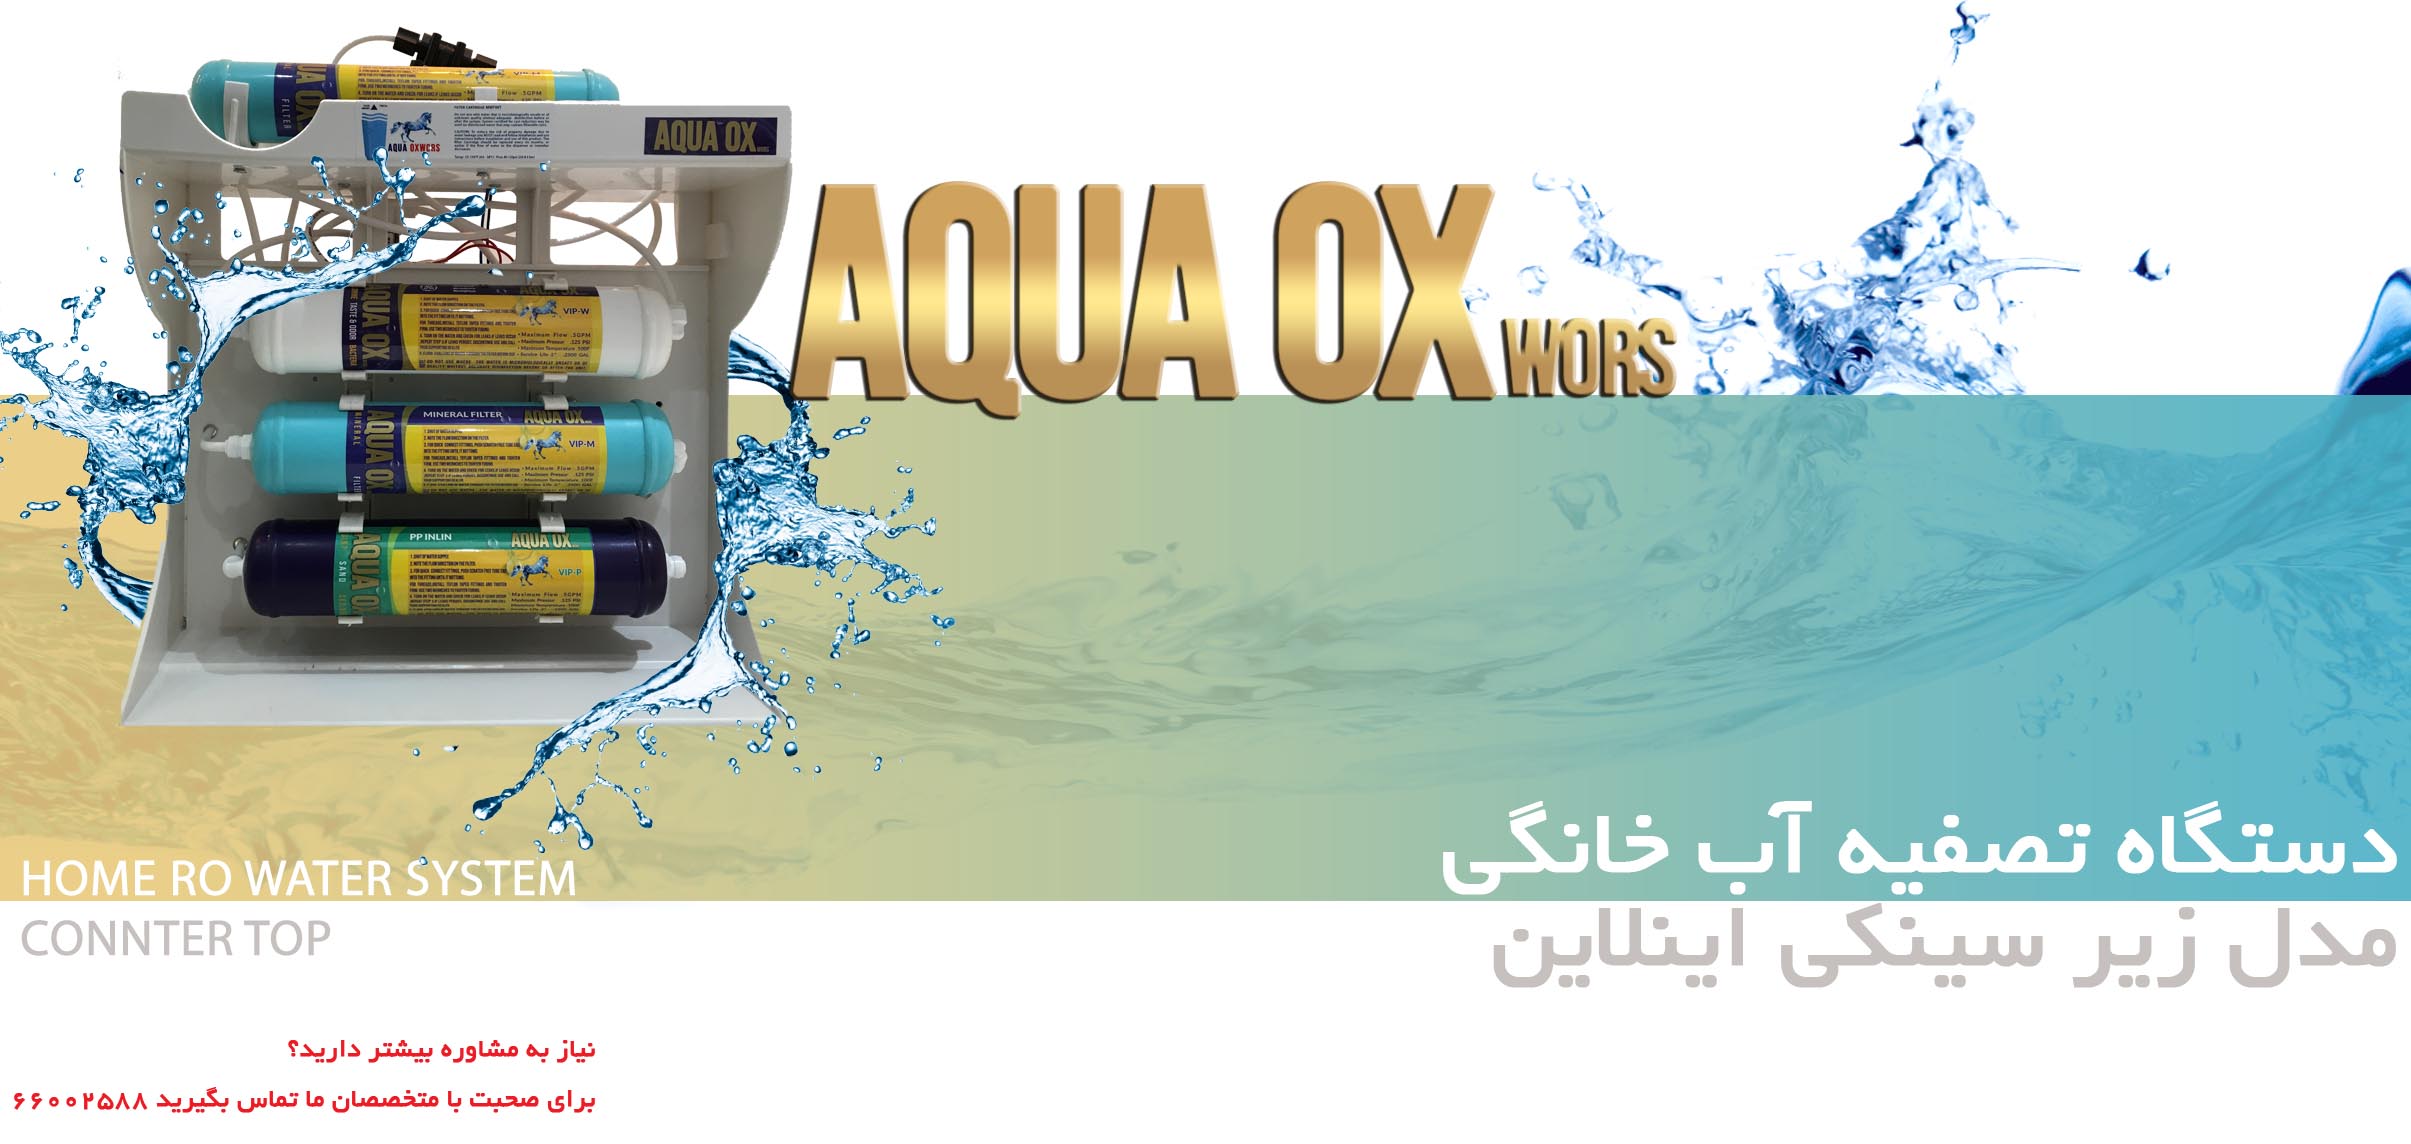 دستگاه تصفیه آب اسمز معکوس AQUA OX